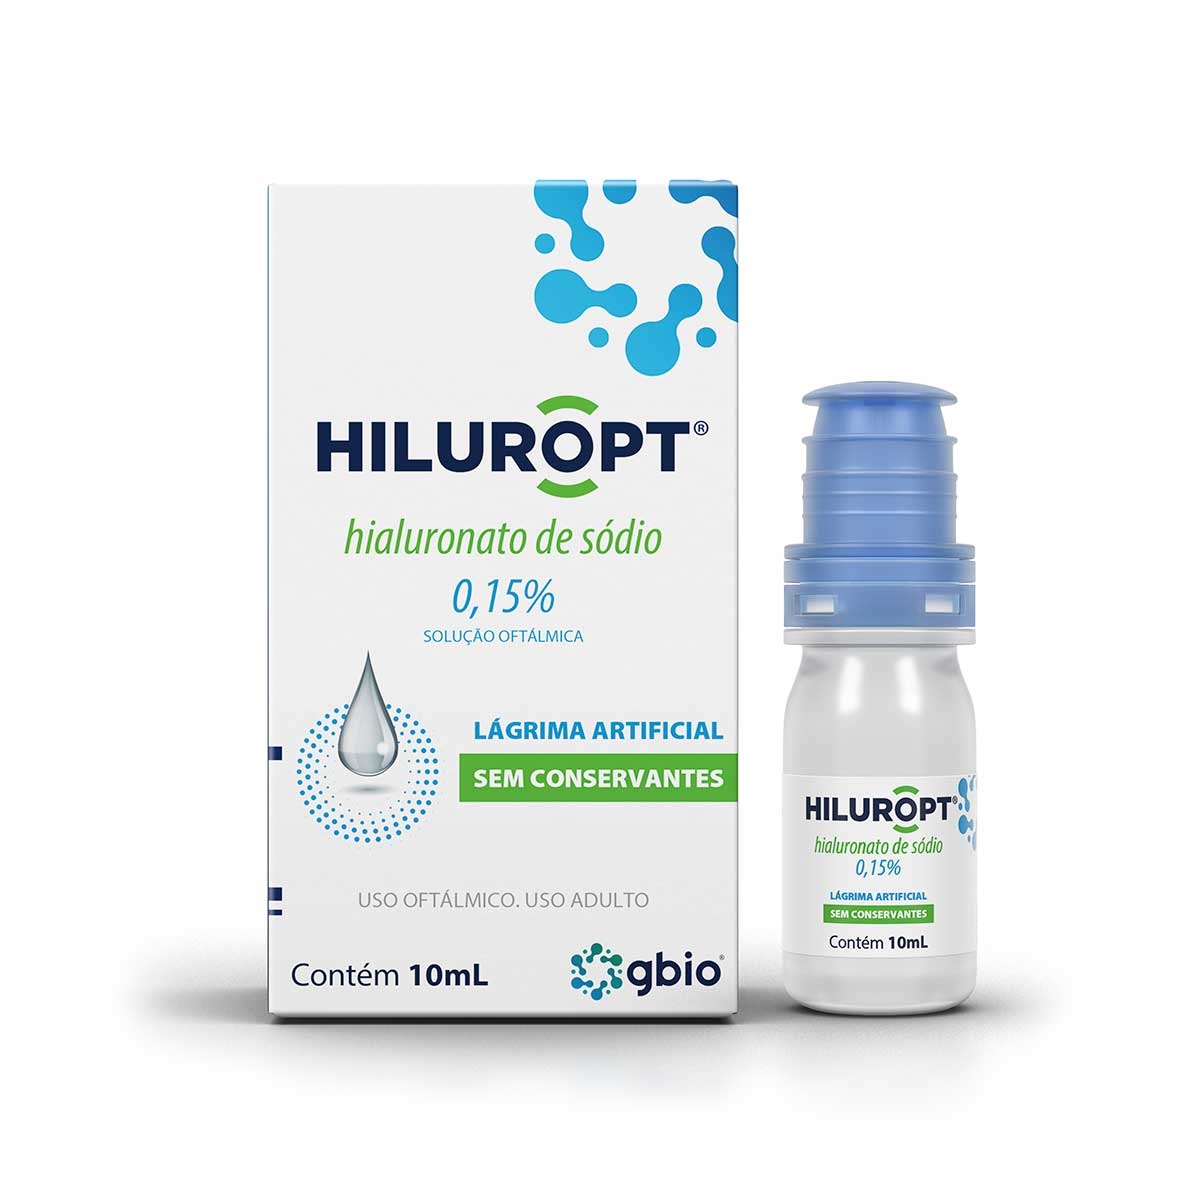 Hiluropt Hialuronato de Sódio 0,15% Solução Oftálmica 10ml